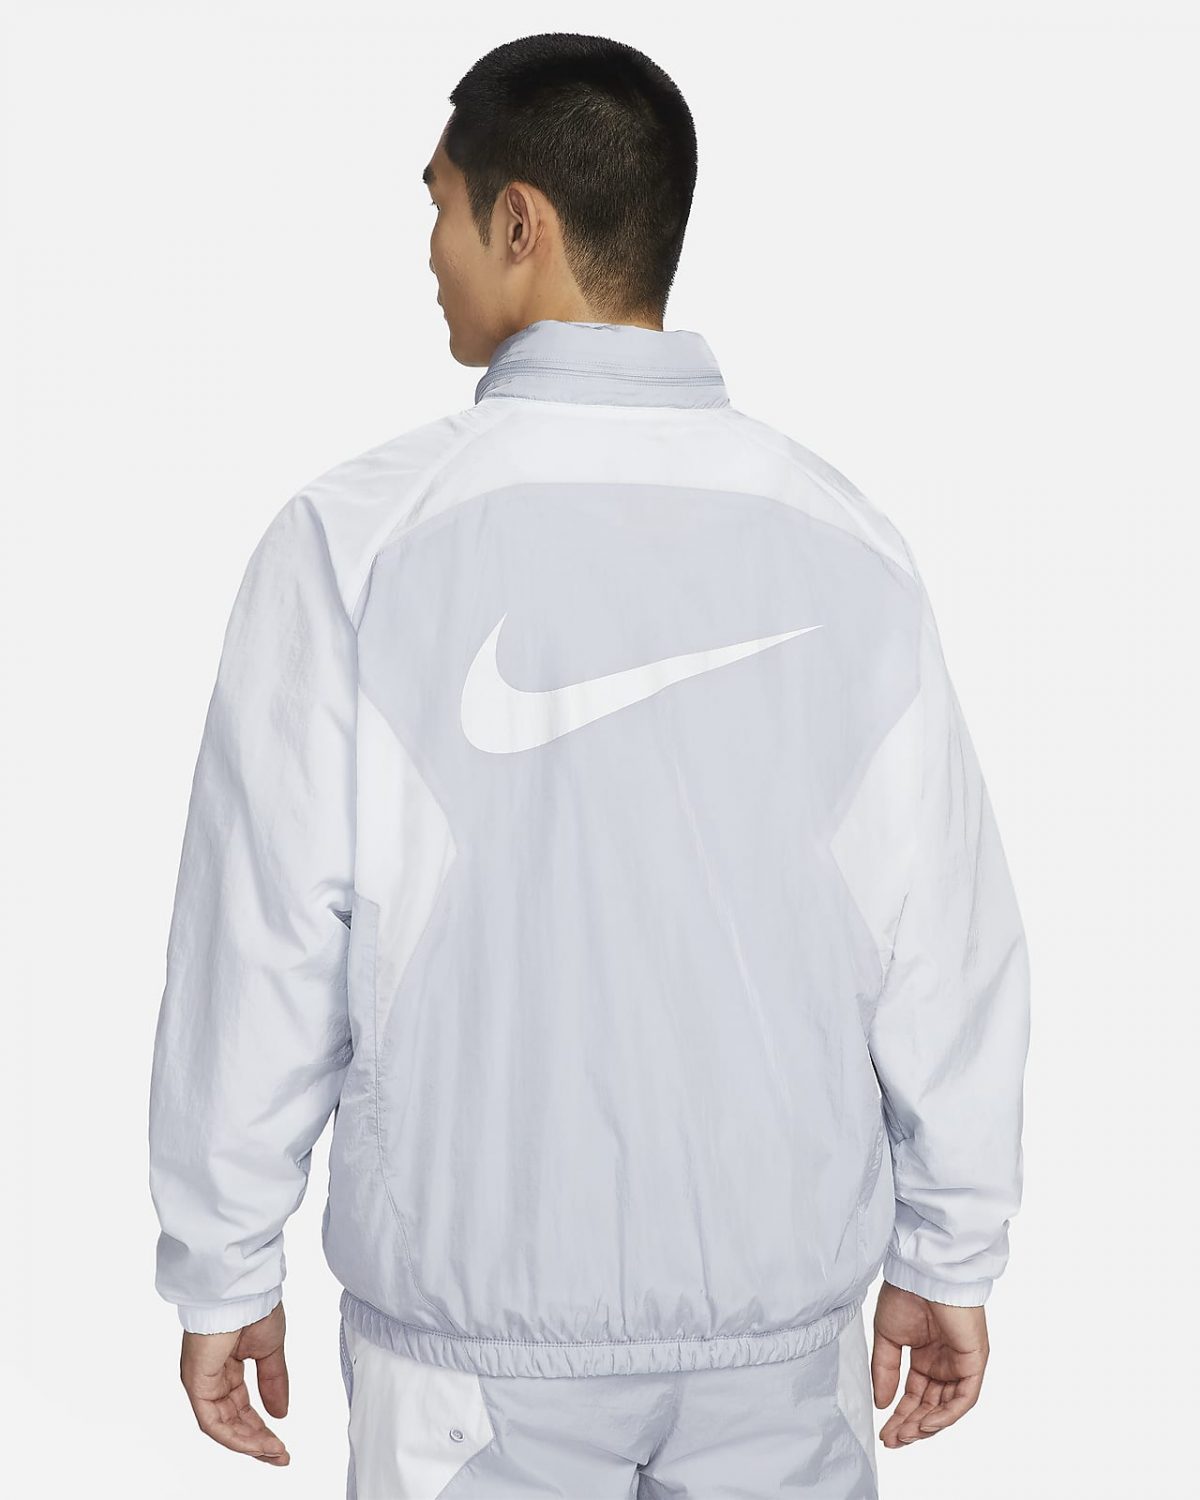 Мужская куртка Nike Culture of Football серая фотография